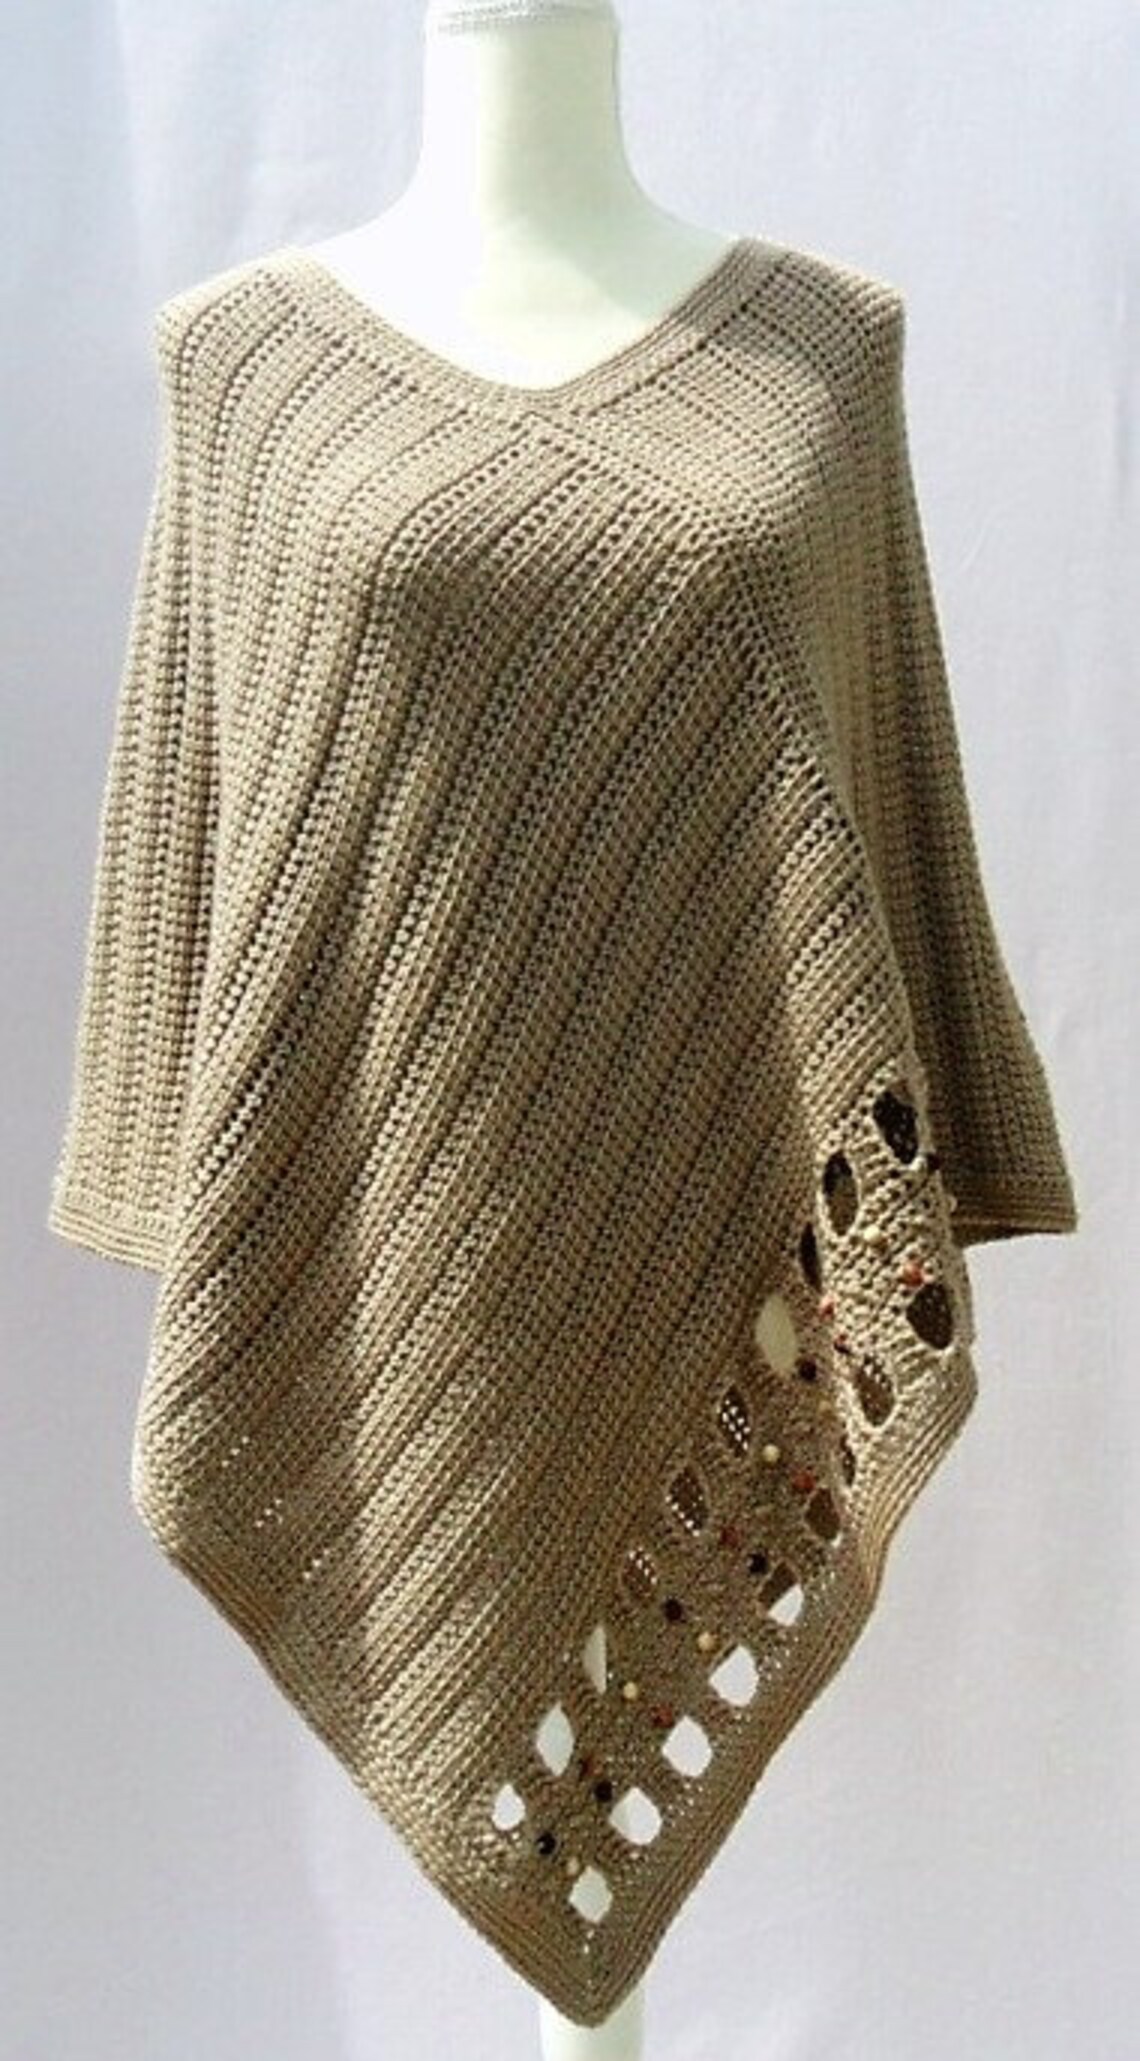 Minda Poncho Crochet Pattern - Etsy